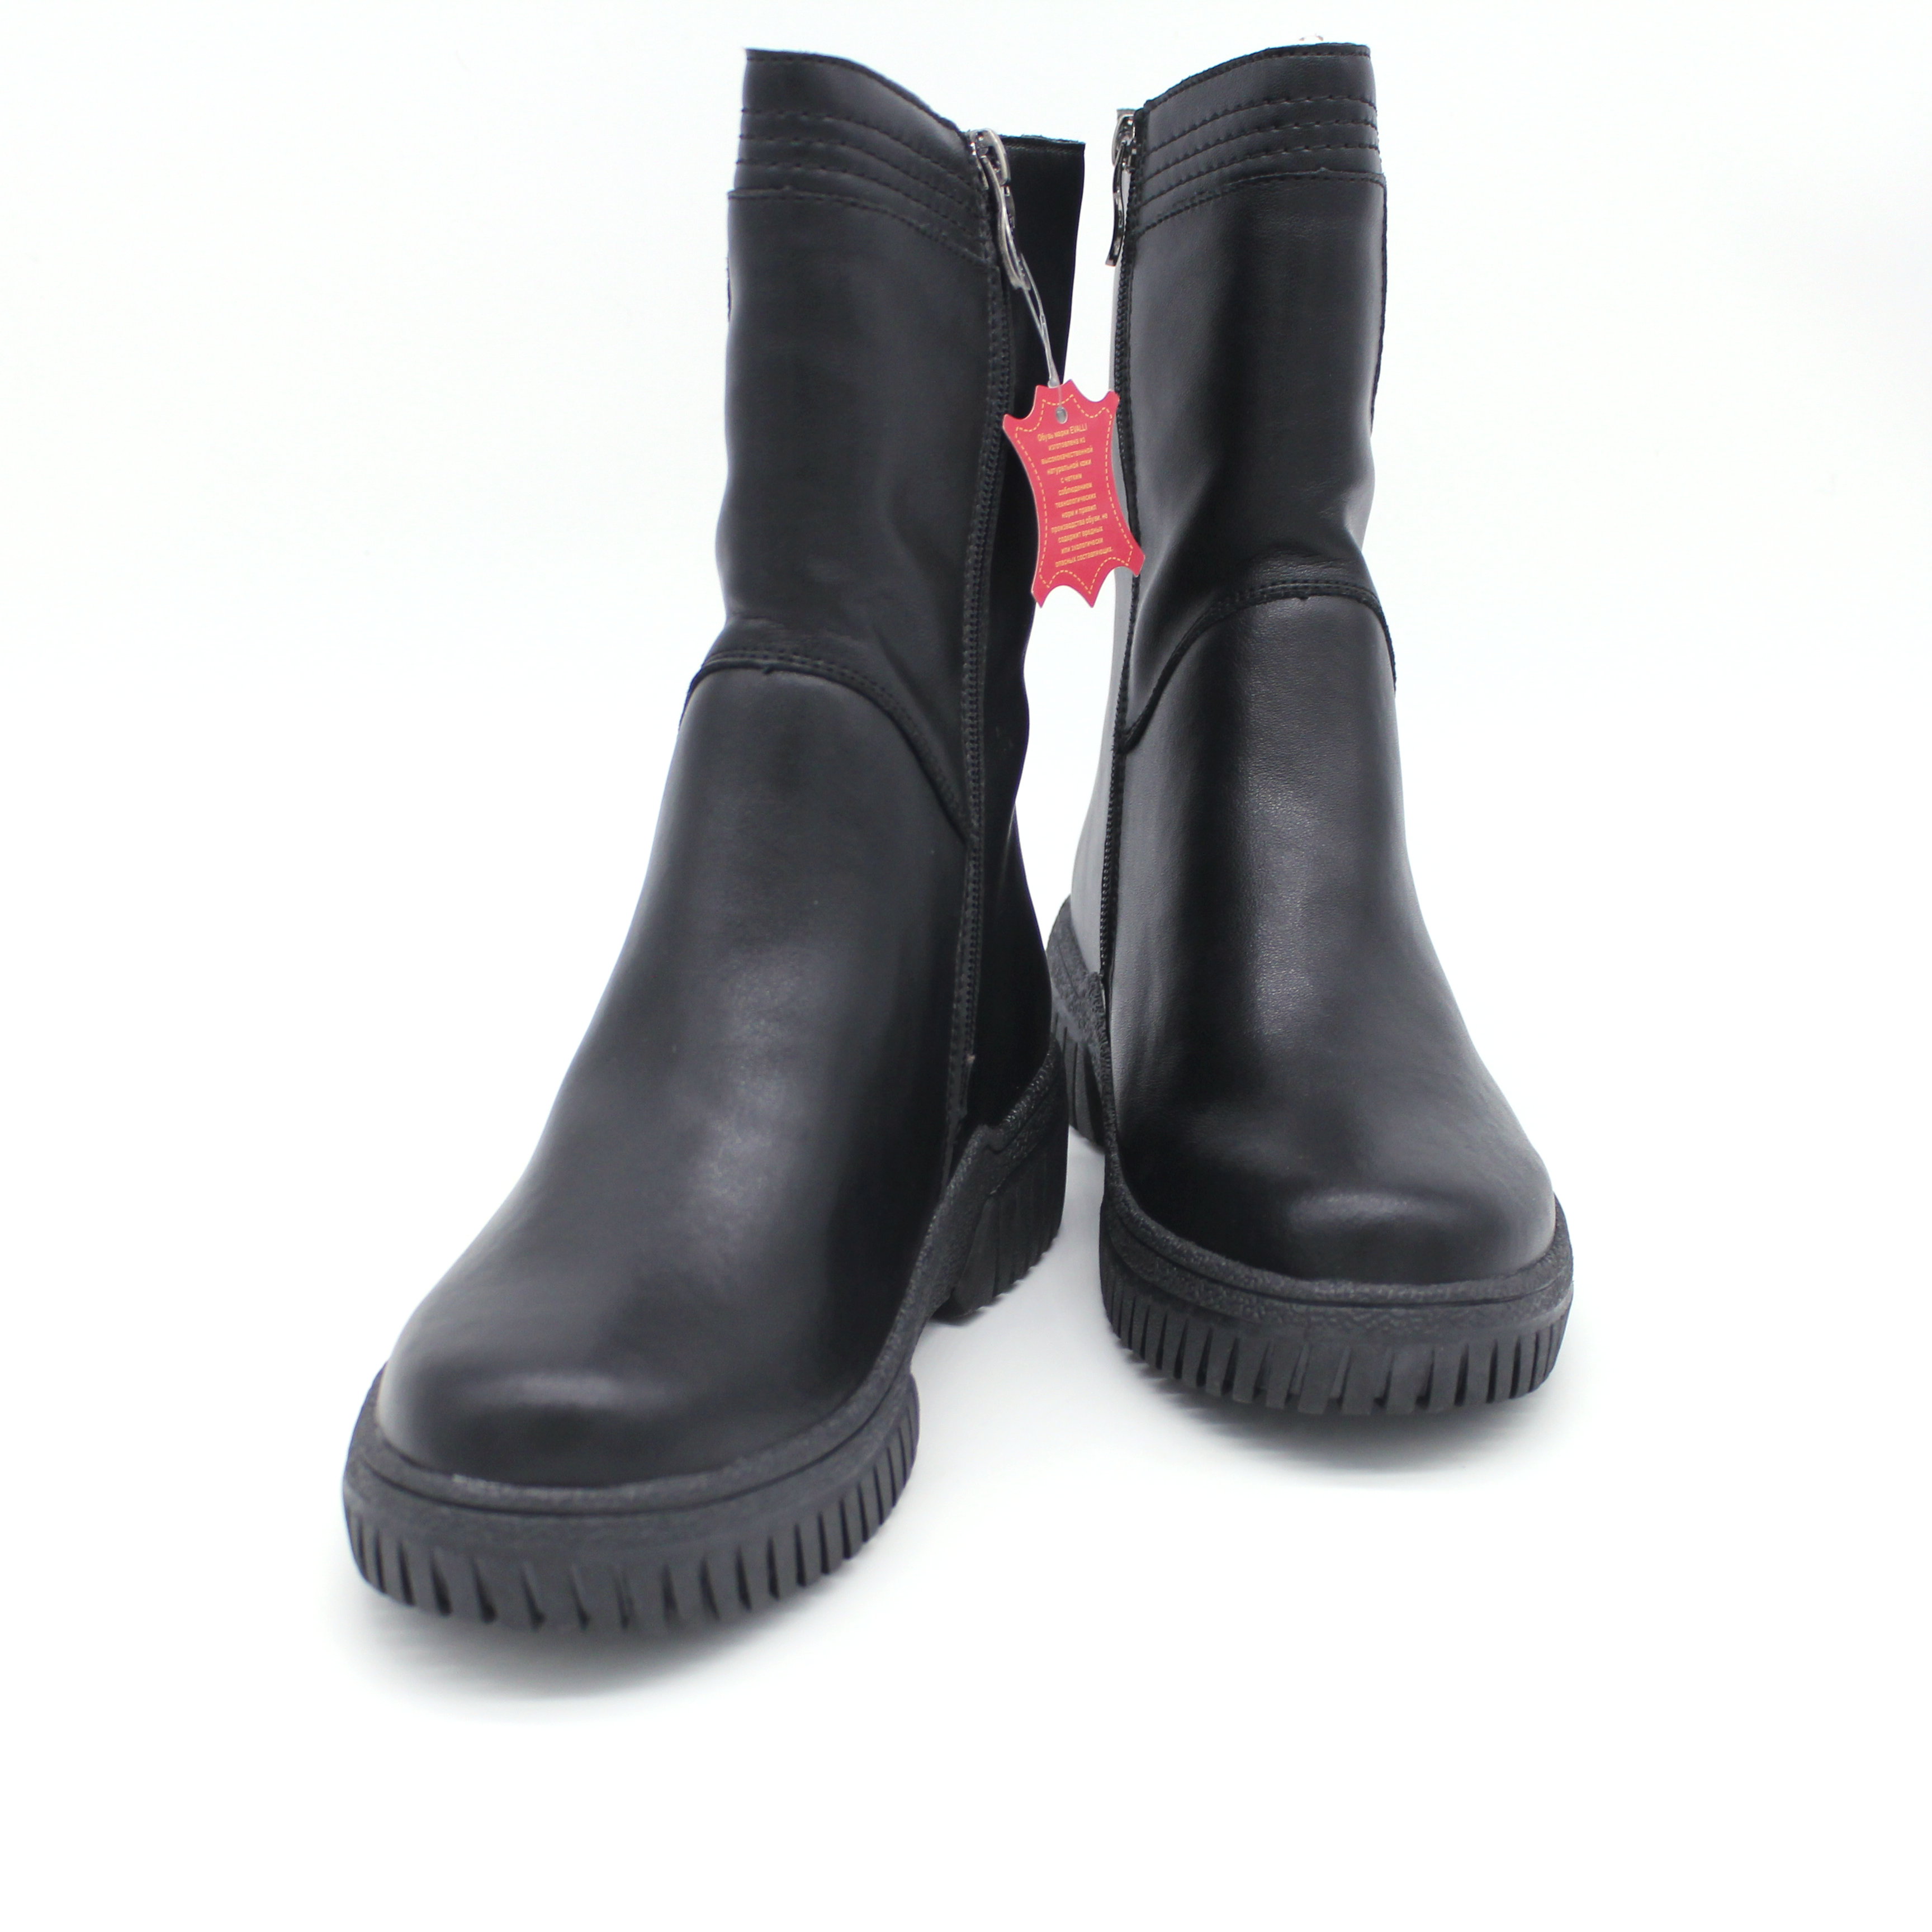 Полусапоги обувь женская зимняя W2 VVM3 1 Чёрный кожа мех